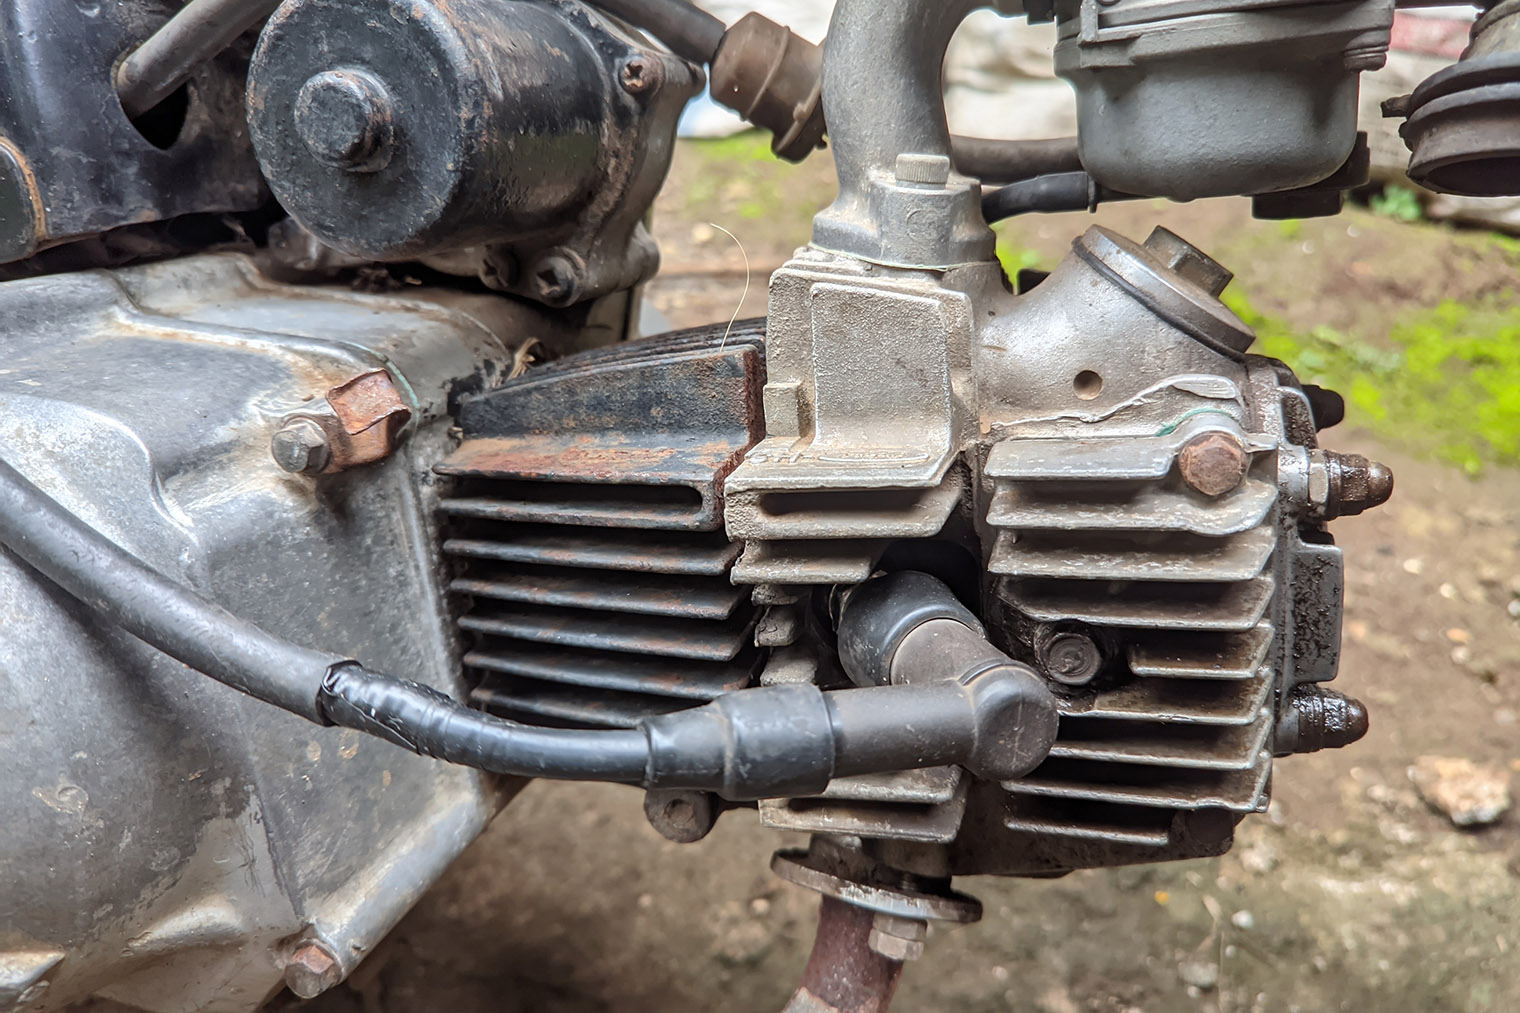 Ребра охлаждения на двигателе старого мотоцикла обдуваются потоком воздуха при движении. Этого хватает, чтобы избежать перегрева, — в вентиляторе нет необходимости. Фото: Wong Gunkid / Shutterstock